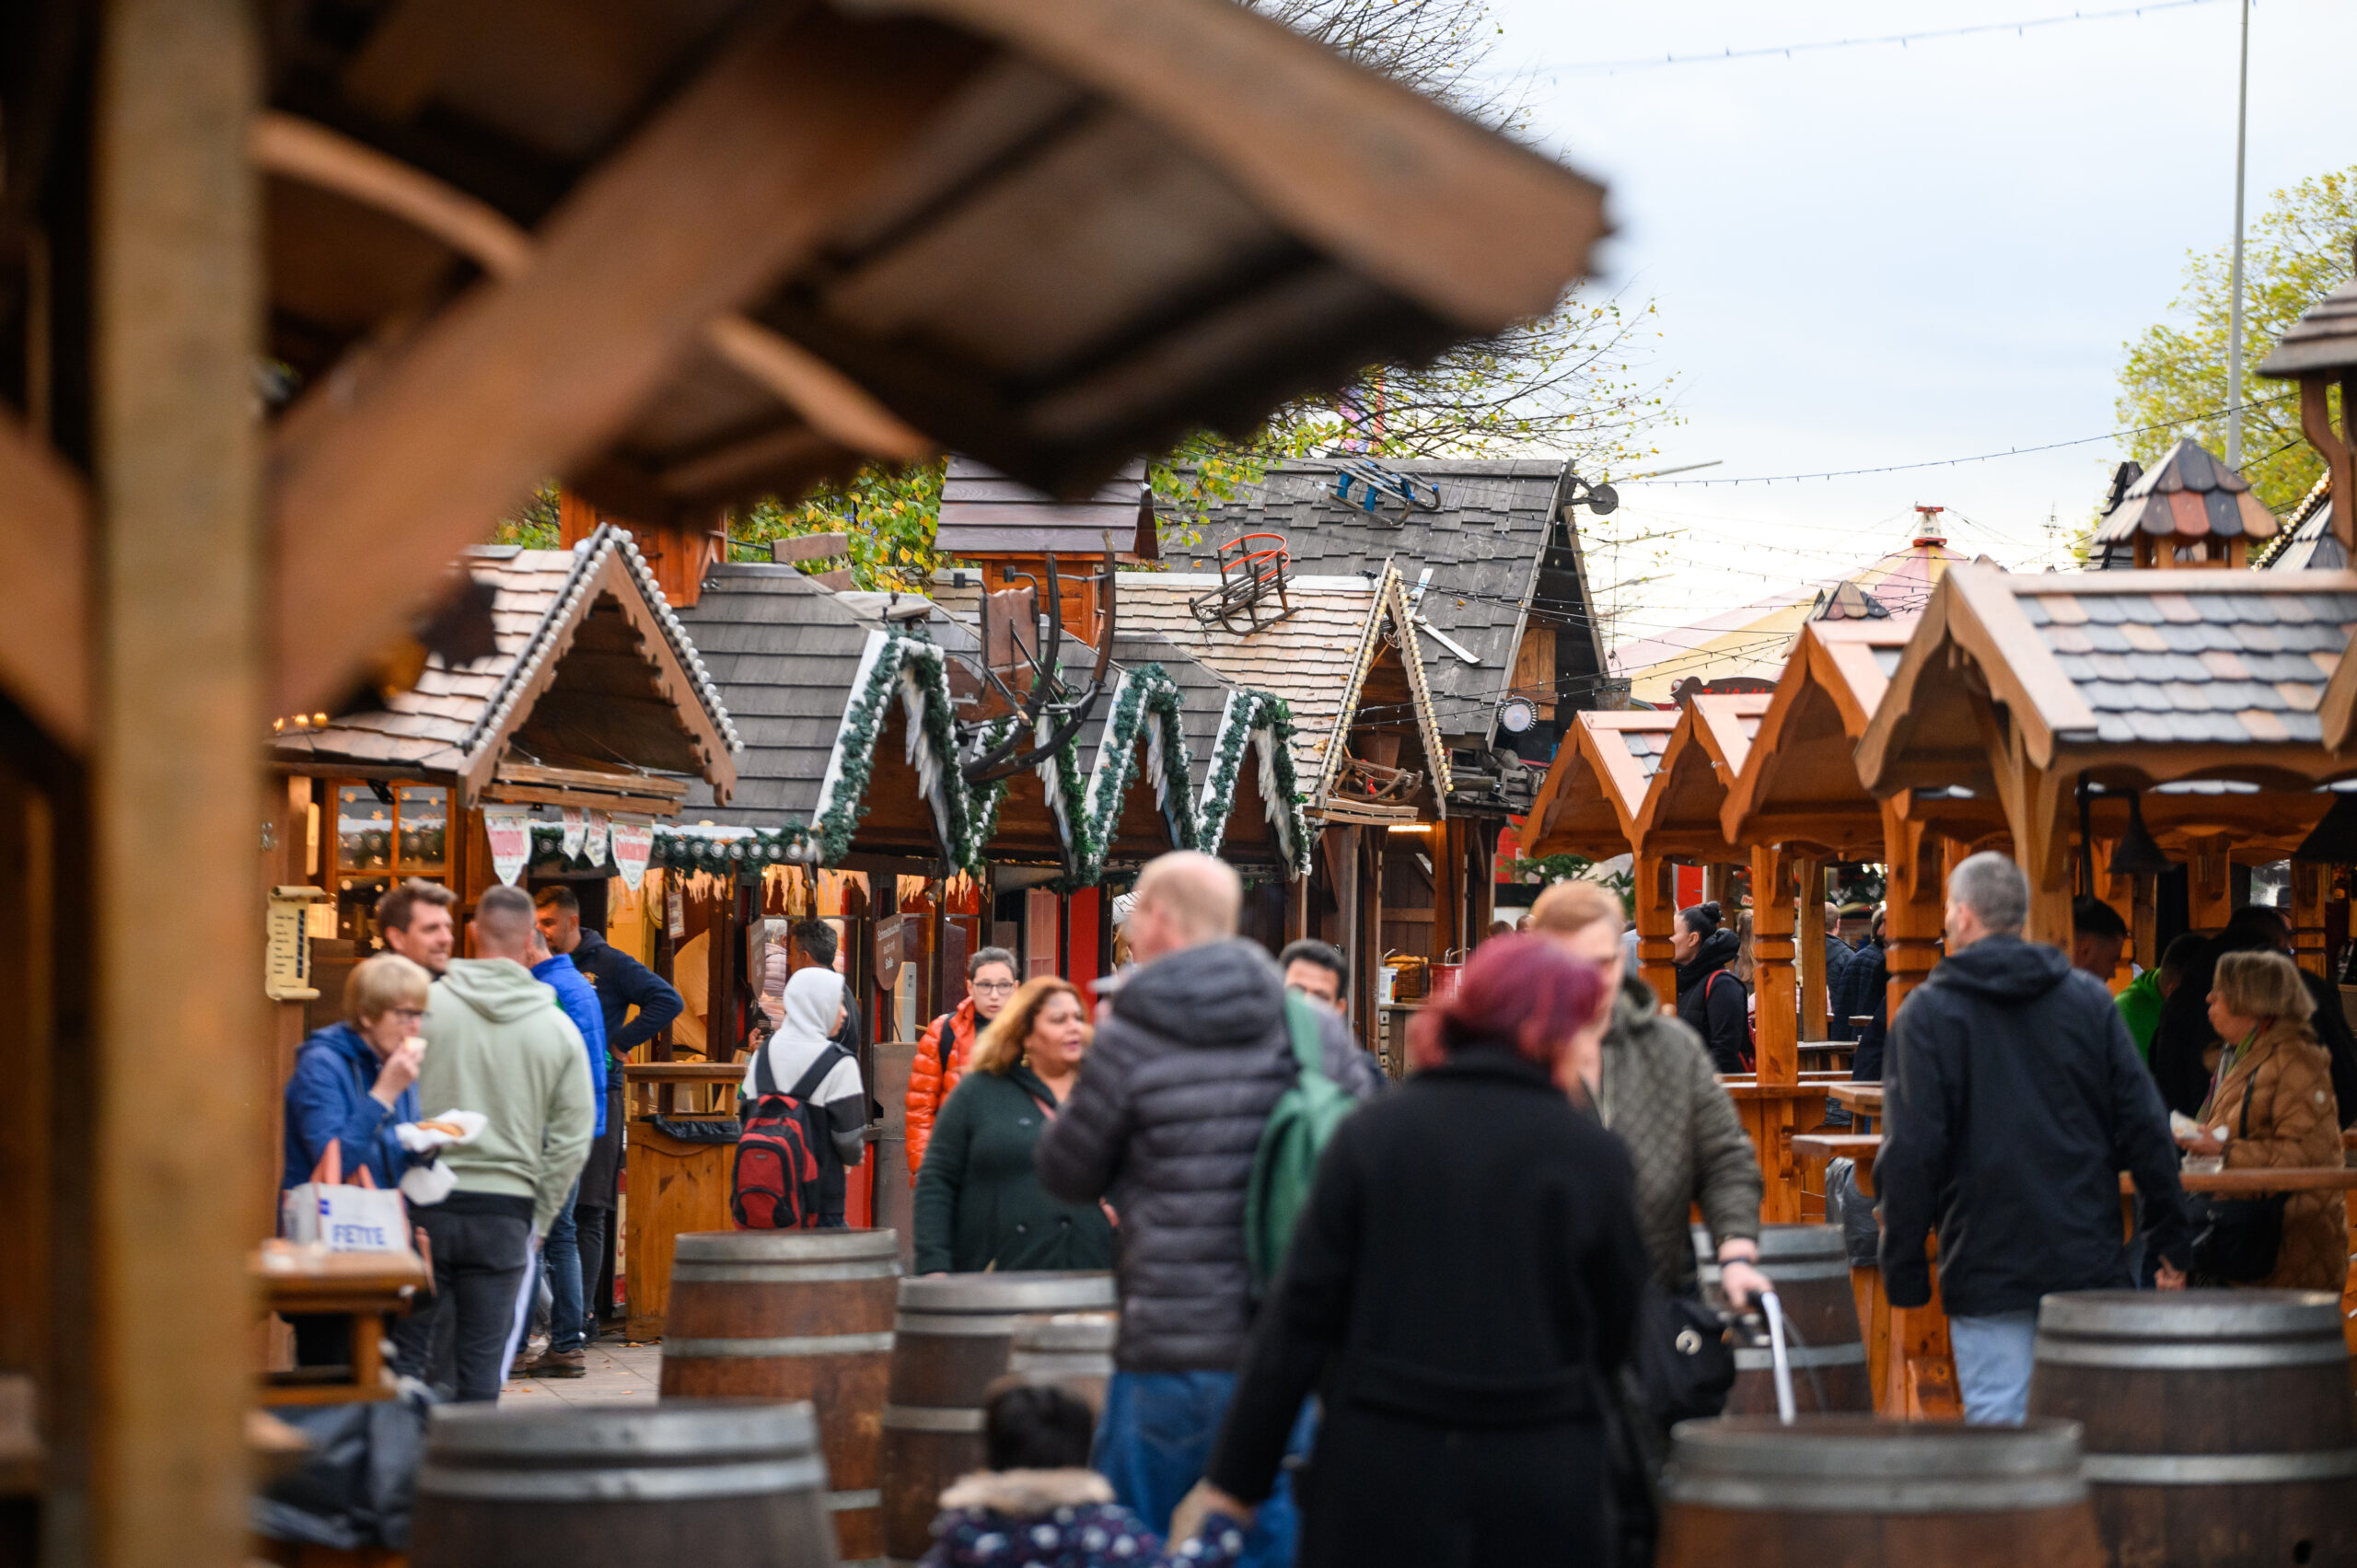 Der Wandsbeker Winterzauber ist offiziell kein Weihnachtsmarkt – die Buden im Almhütten-Design sorgen für eine gemütliche Stimmung. (Archivbild)